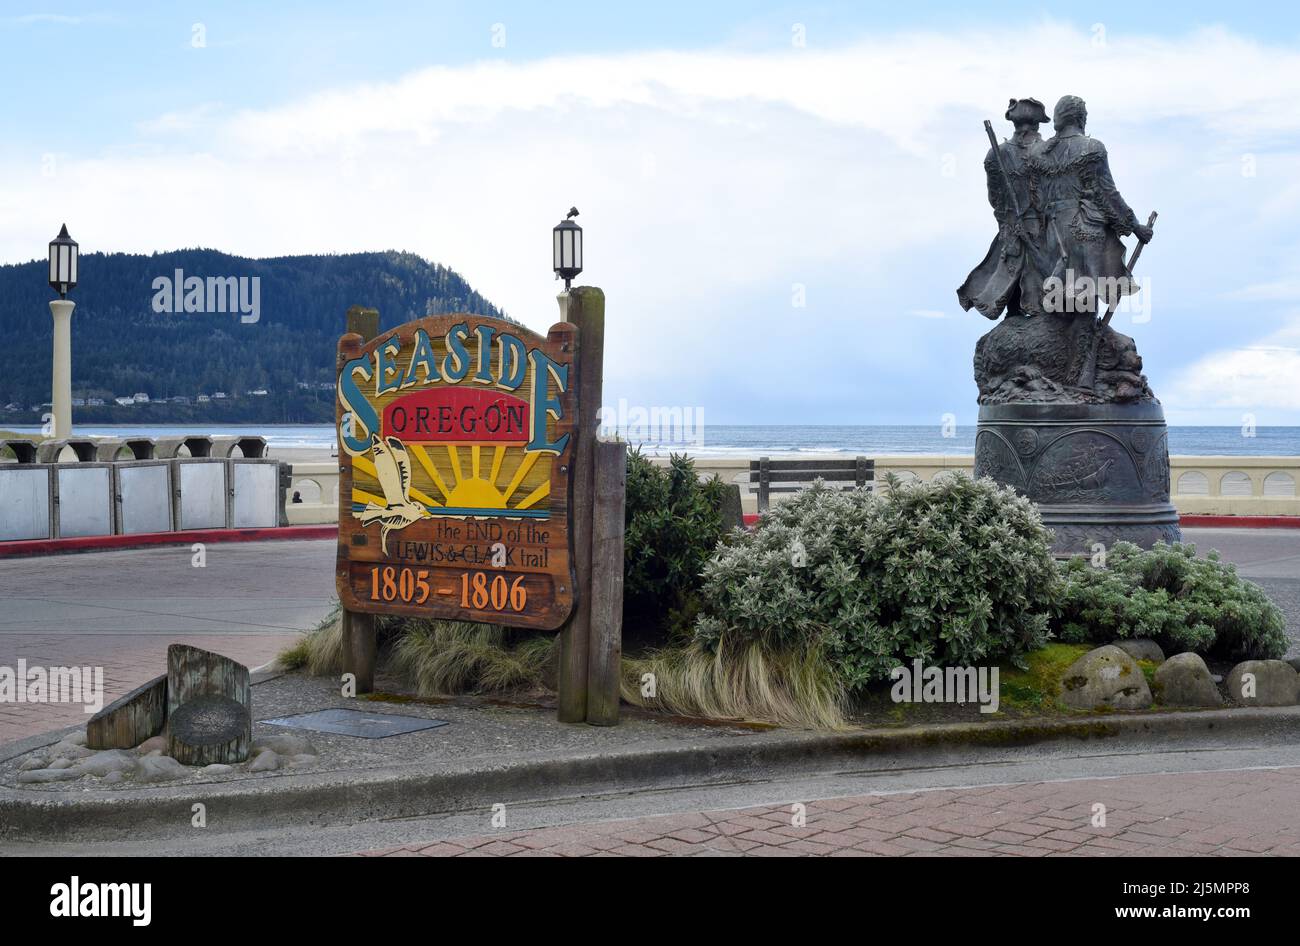 Un cartello sul lungomare per la cittadina turistica costiera di Seaside, Oregon, USA con una statua degli esploratori Lewis e Clark sulla destra. Foto Stock